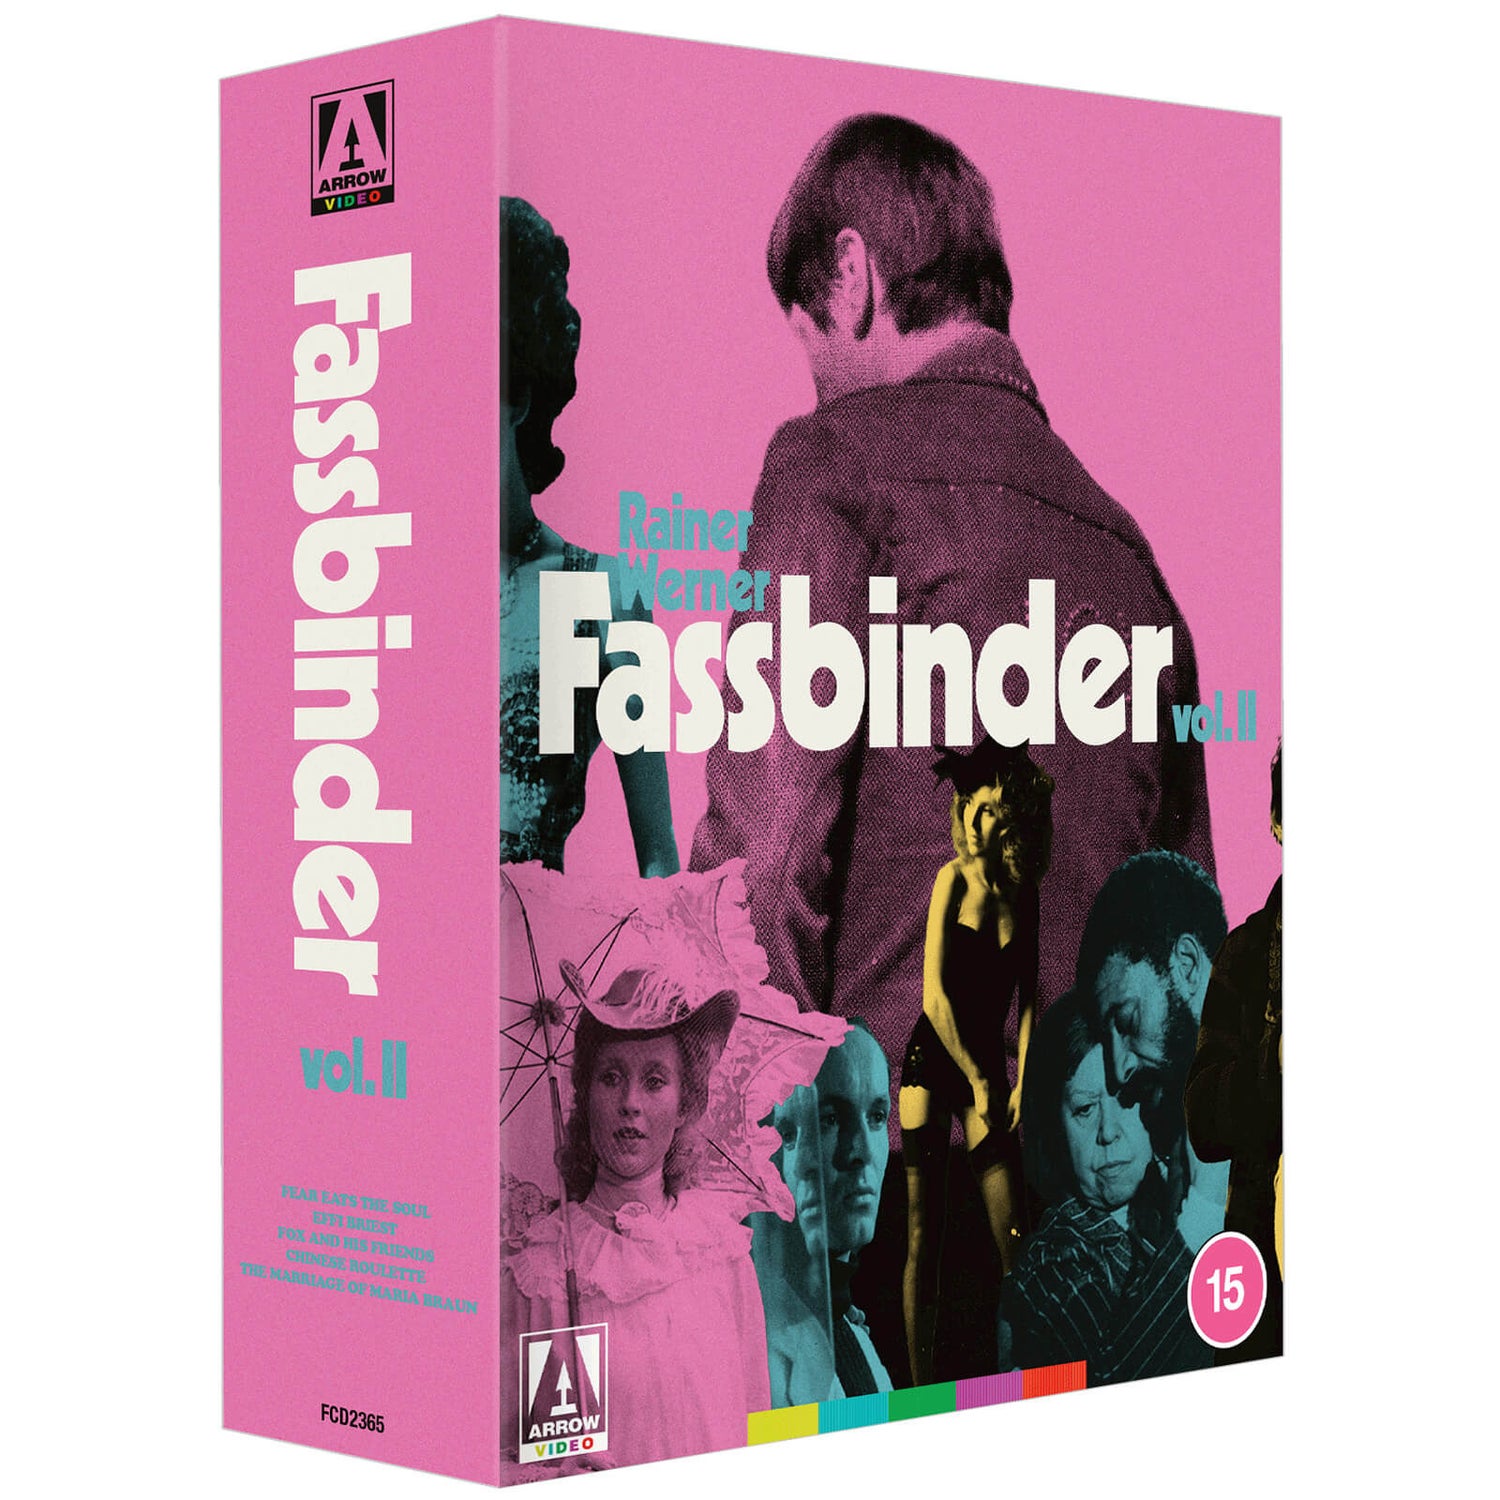 Rainer Werner Fassbinder Vol 2 | Arrow Films UK